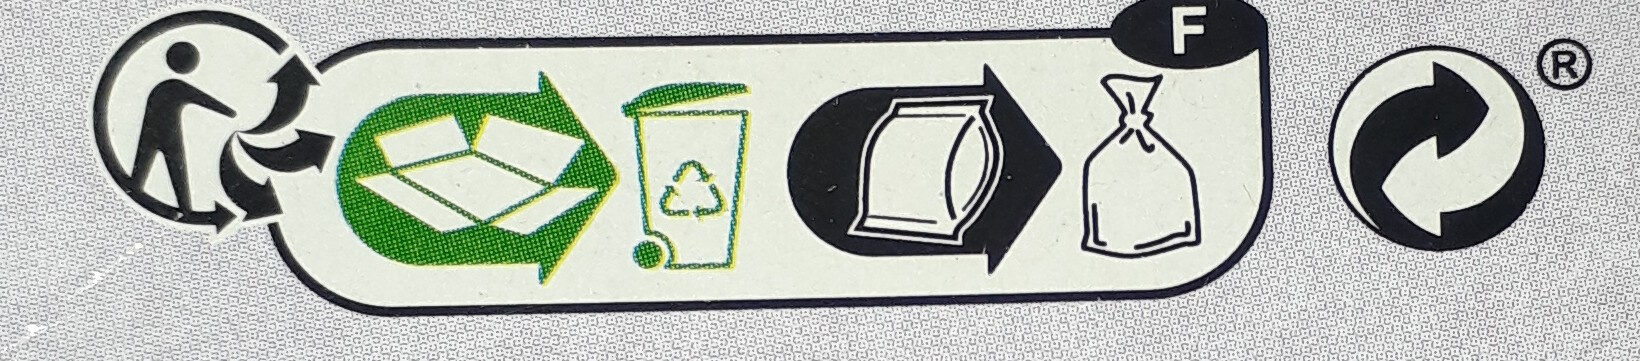 Les Tablettes AU CHOCOLAT AU LAIT - Istruzioni per il riciclaggio e/o informazioni sull'imballaggio - fr